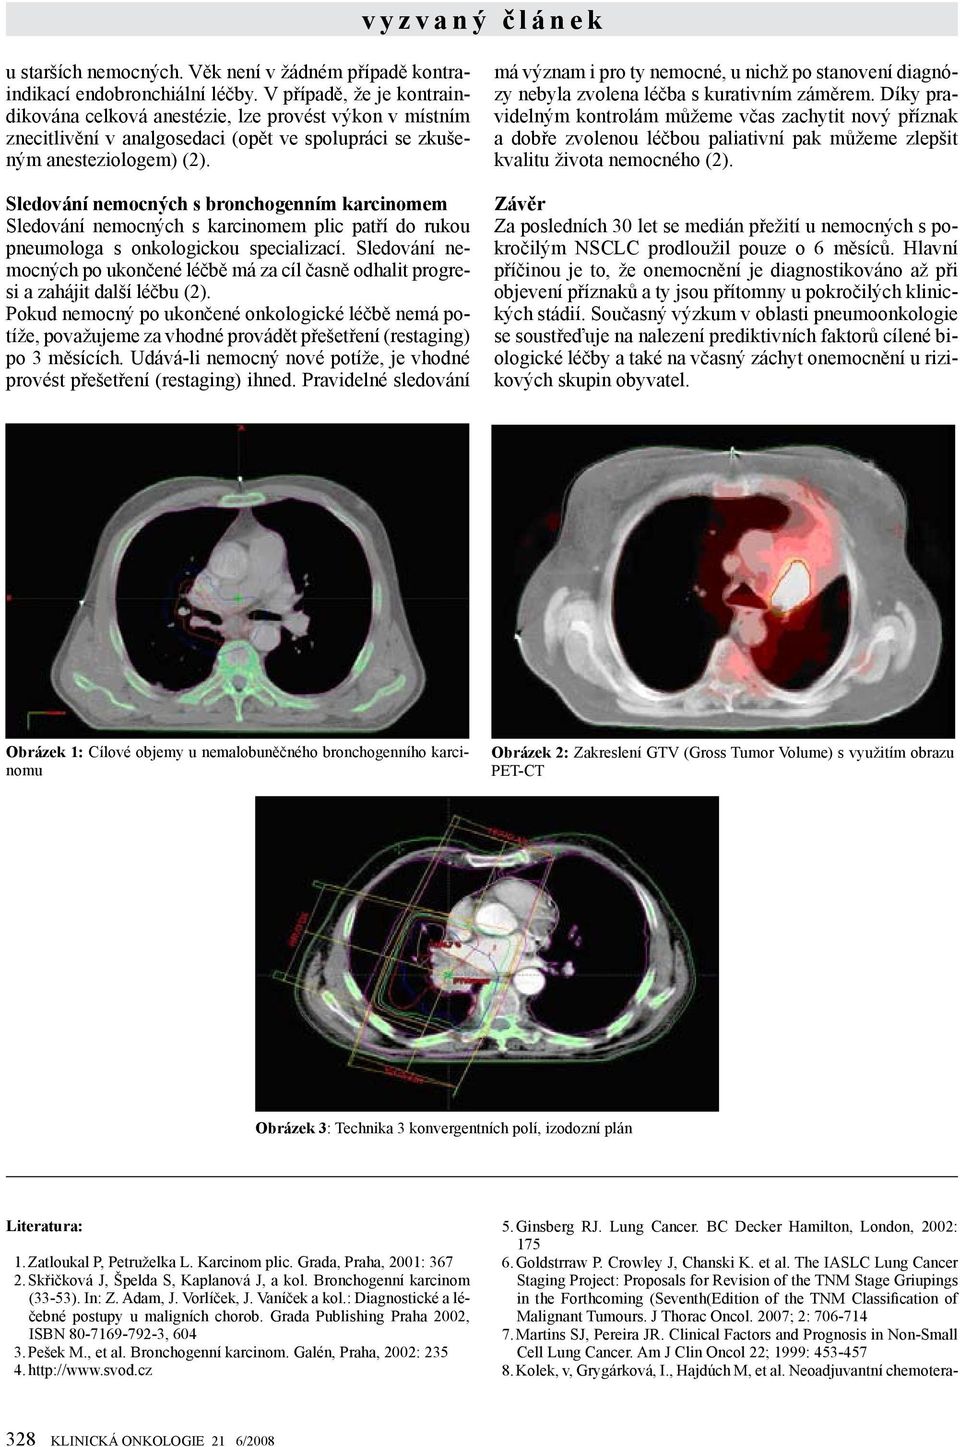 Sledování nemocných s bronchogenním karcinomem Sledování nemocných s karcinomem plic patří do rukou pneumologa s onkologickou specializací.